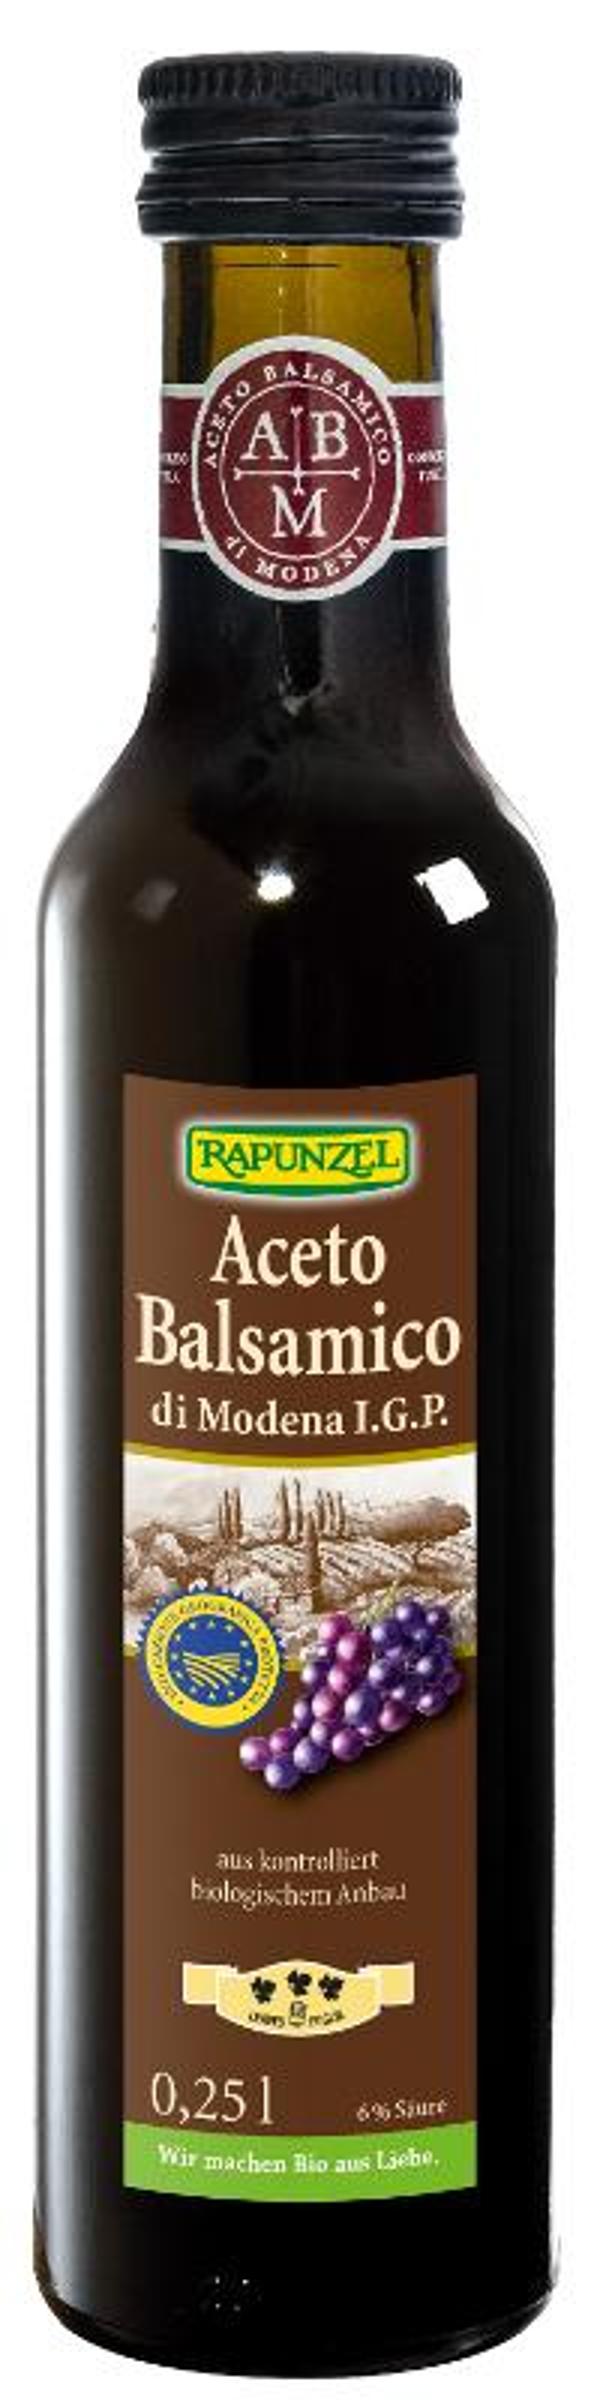 Produktfoto zu Balsamico di Modena Speciale